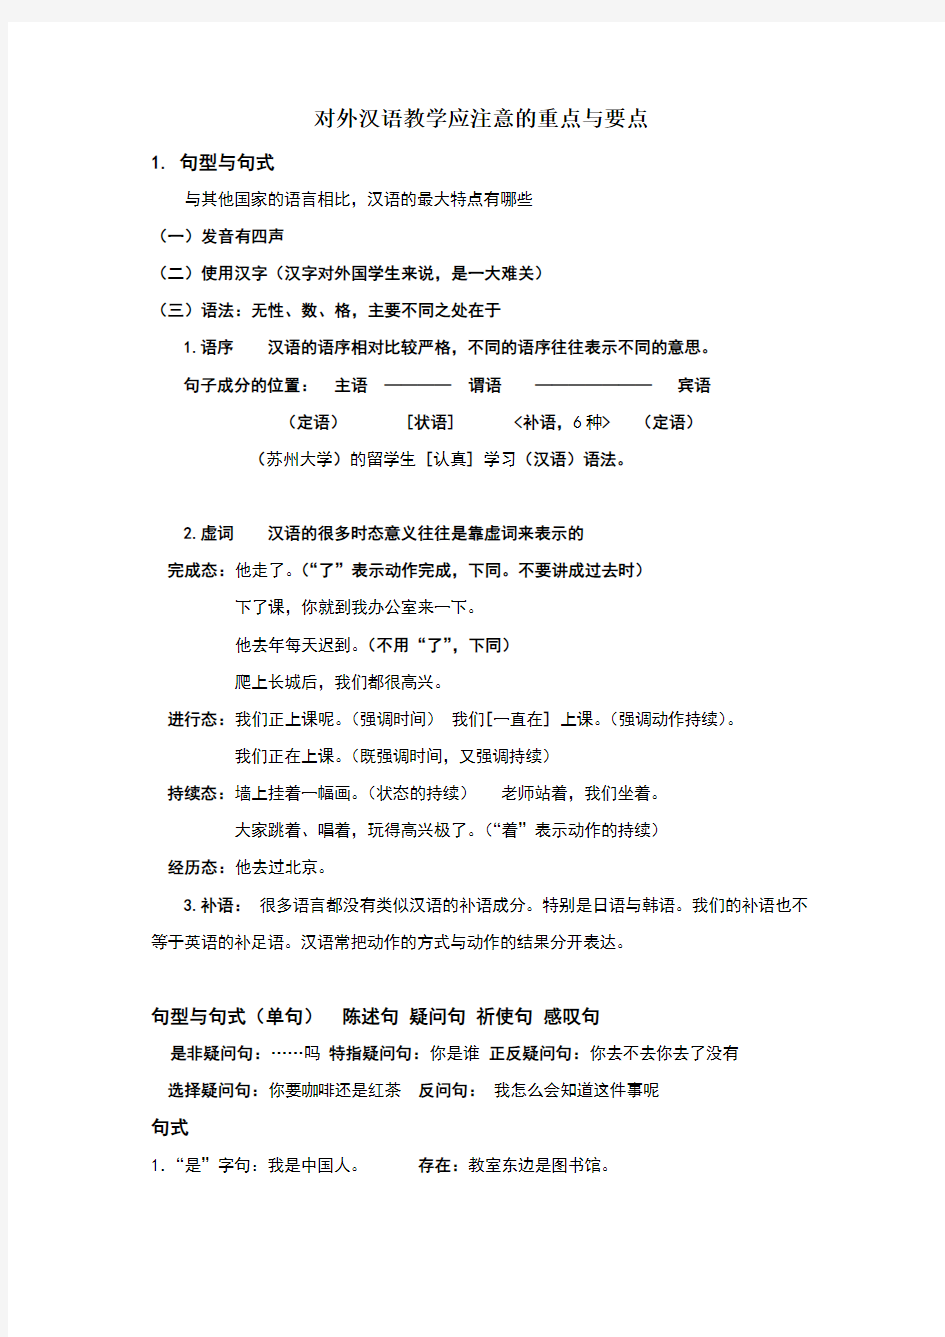 对外汉语教学中的最基本语法点与概念